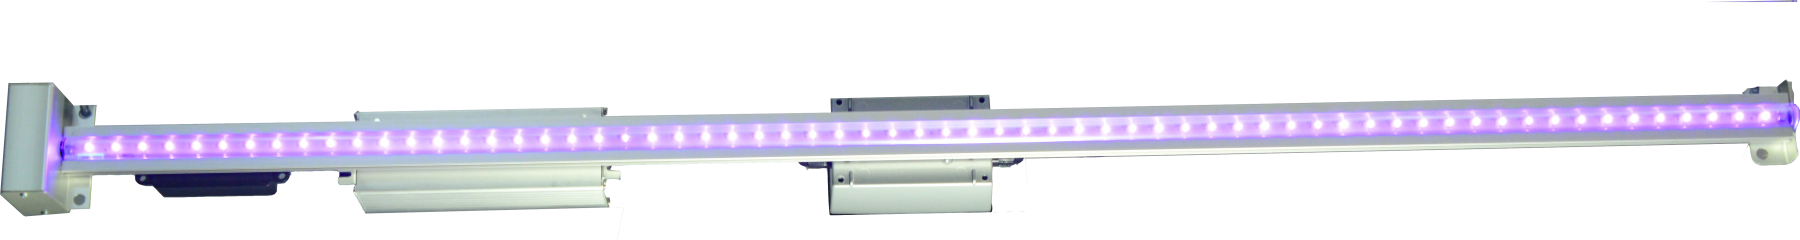 UV LED Light